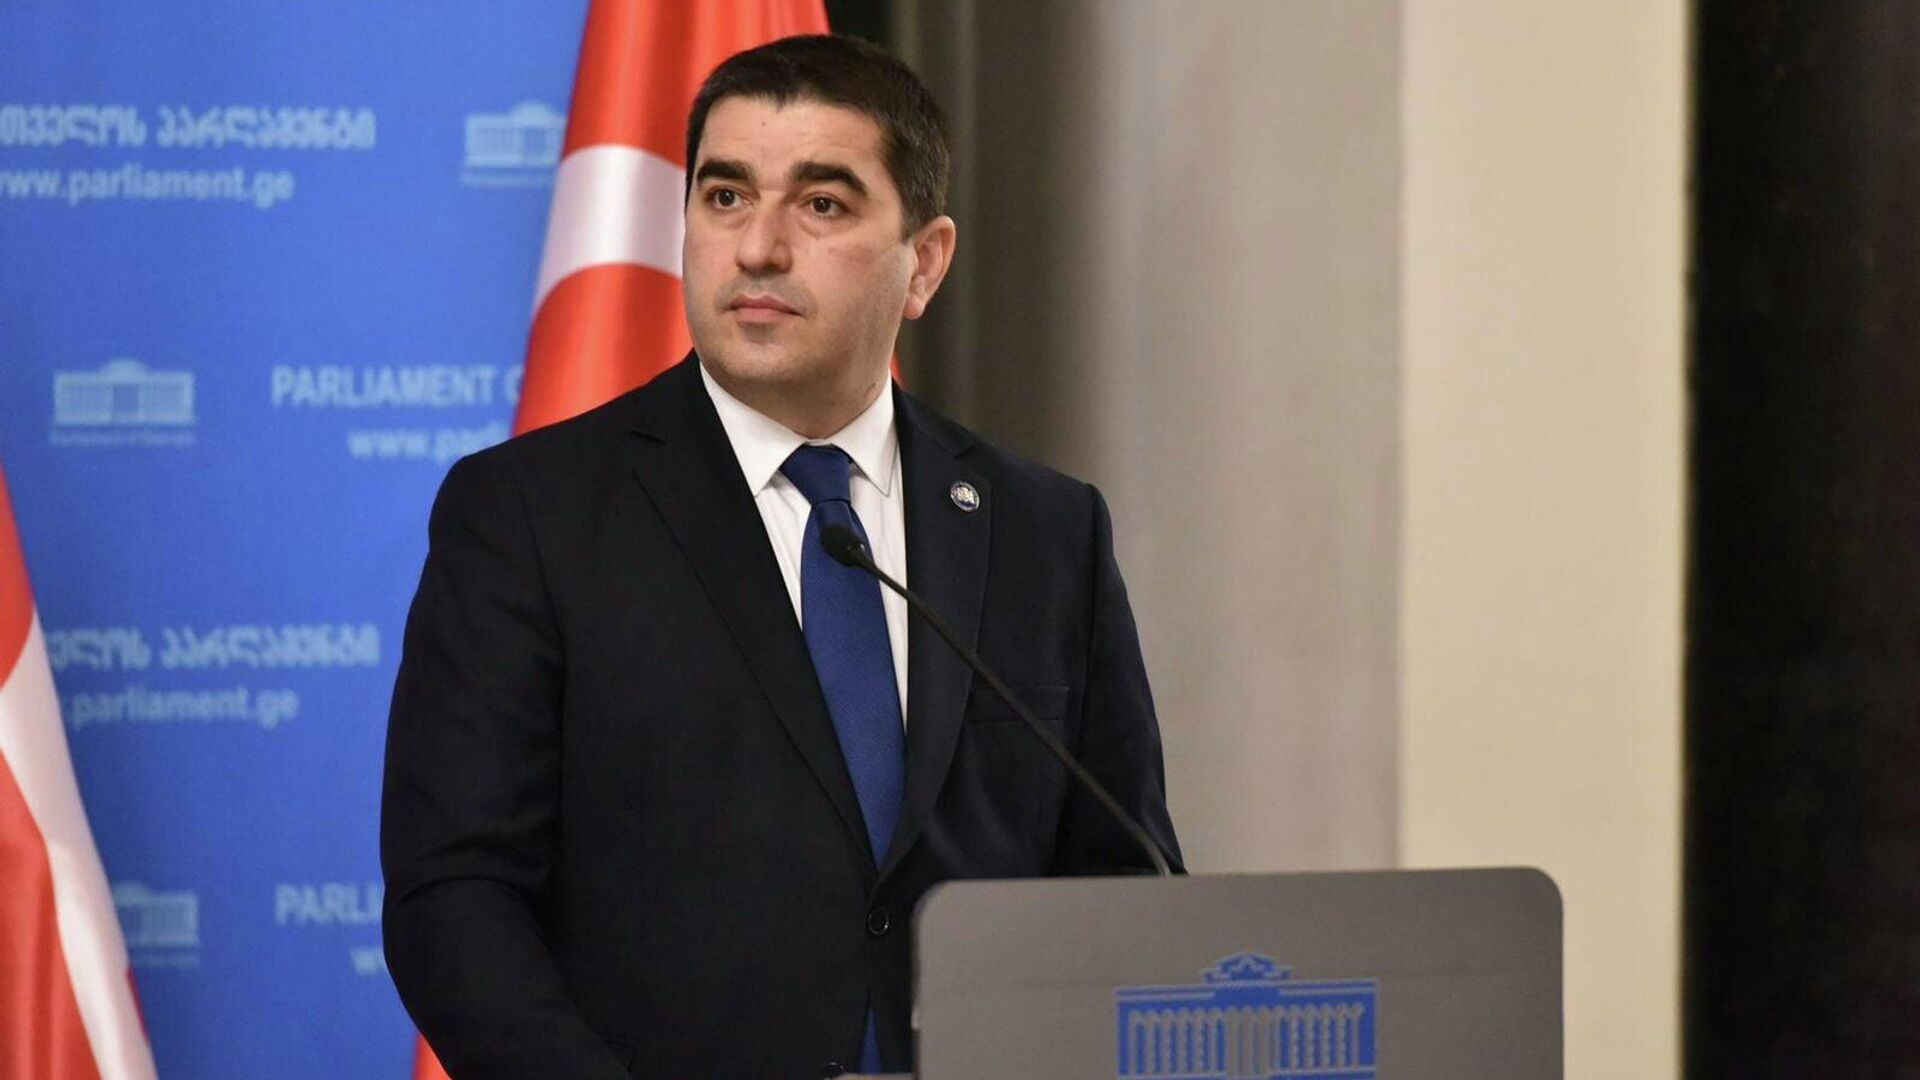 Մեկնարկում է Վրաստանի խորհրդարանի նախագահի պաշտոնական այցը Հայաստան